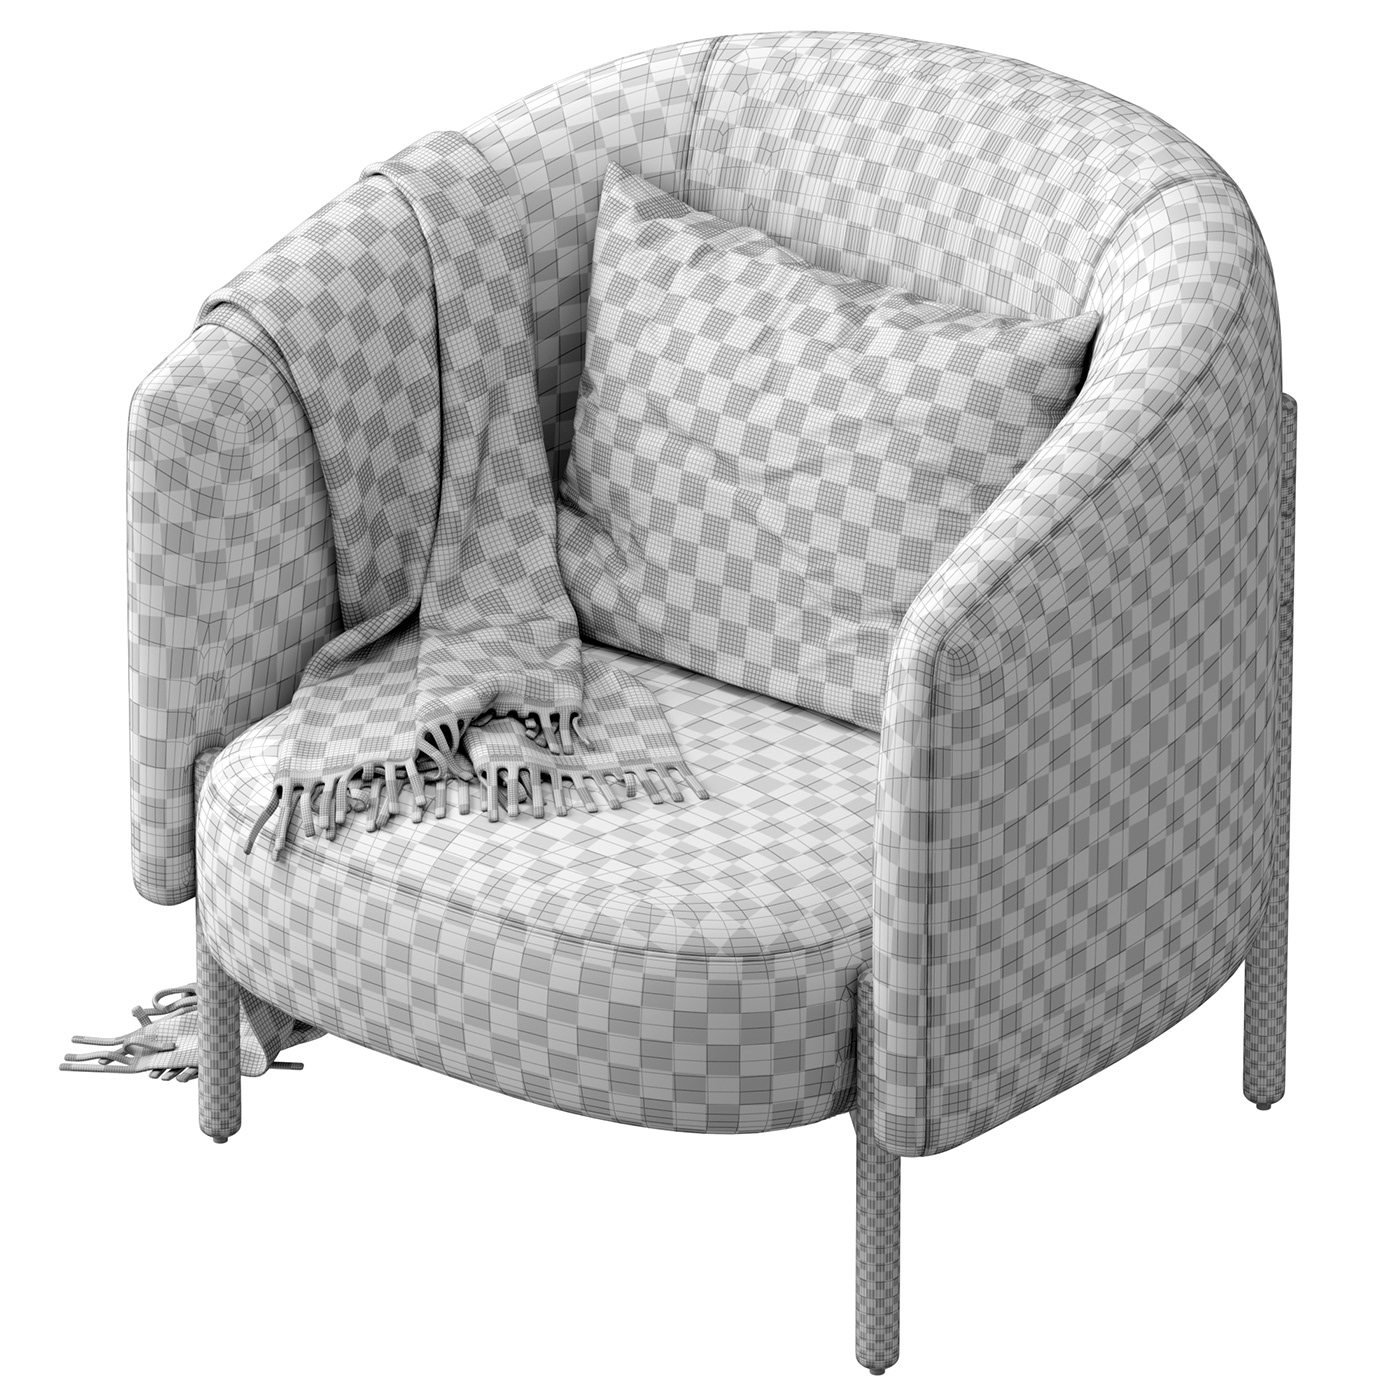 westelm chair 3dmodeling visualization cgtrader cgmood 3DDD oak arcmchair